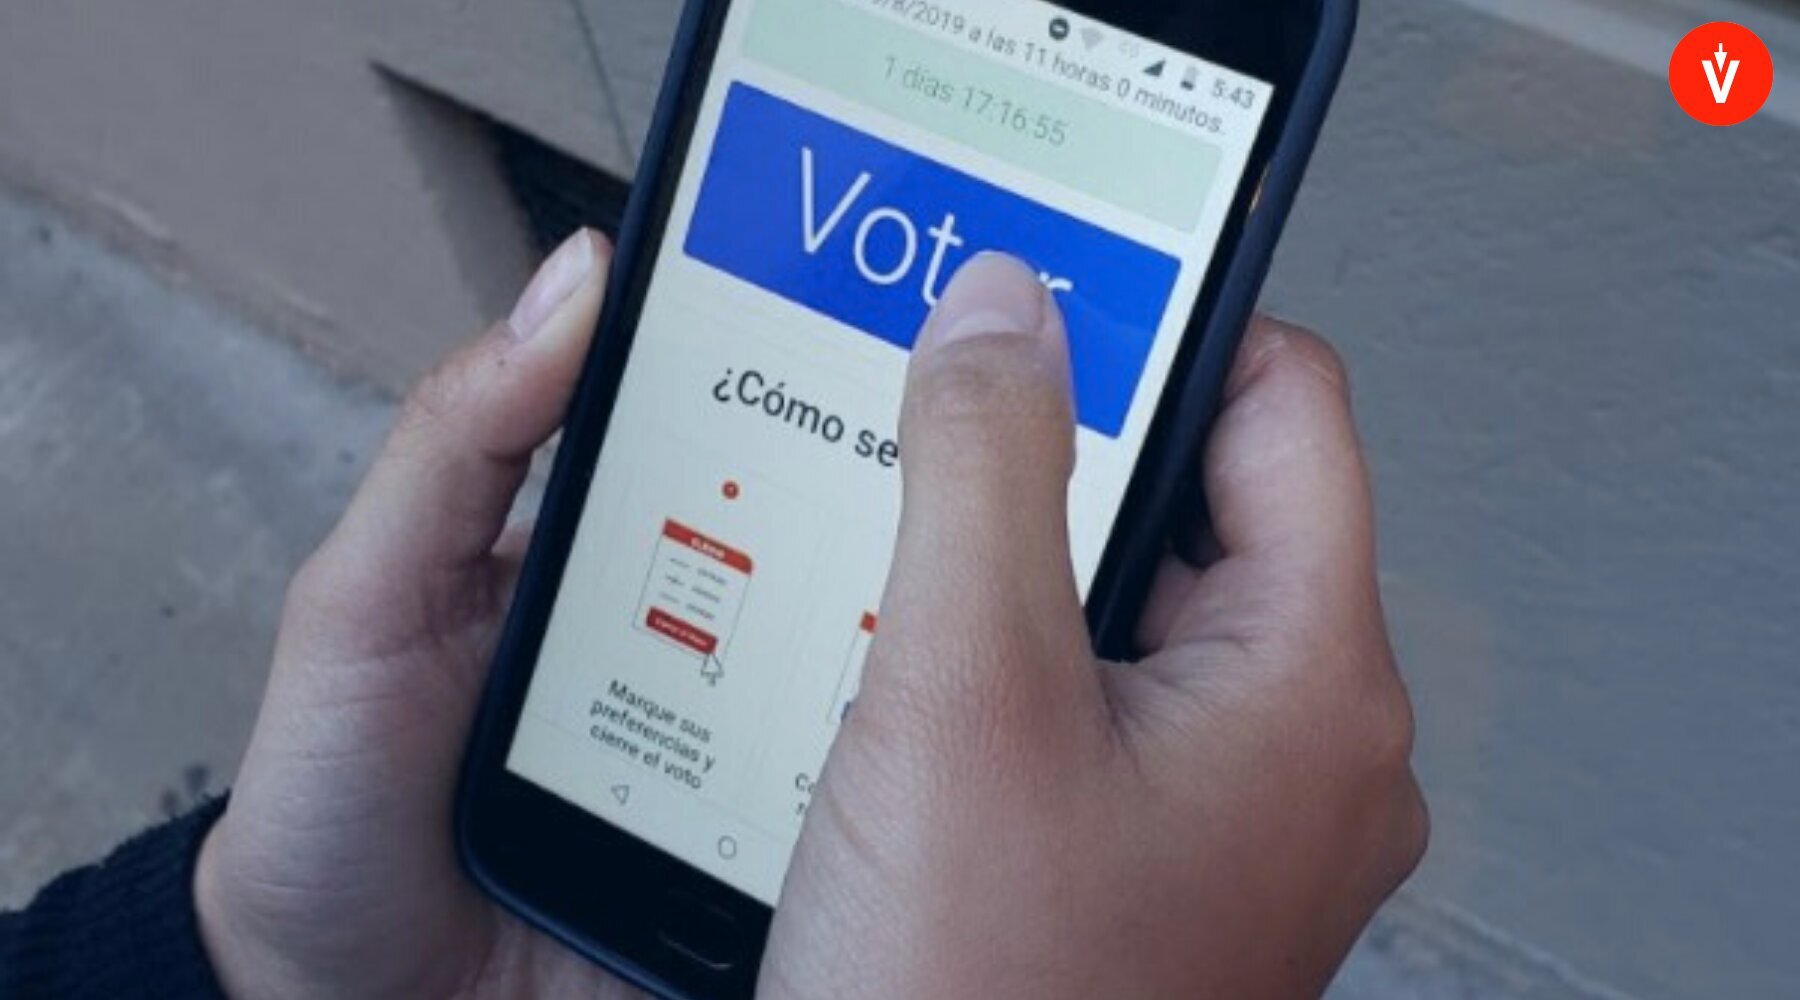 Persona sosteniendo teléfono celular que muestra plataforma de votación electrónica de EVoting